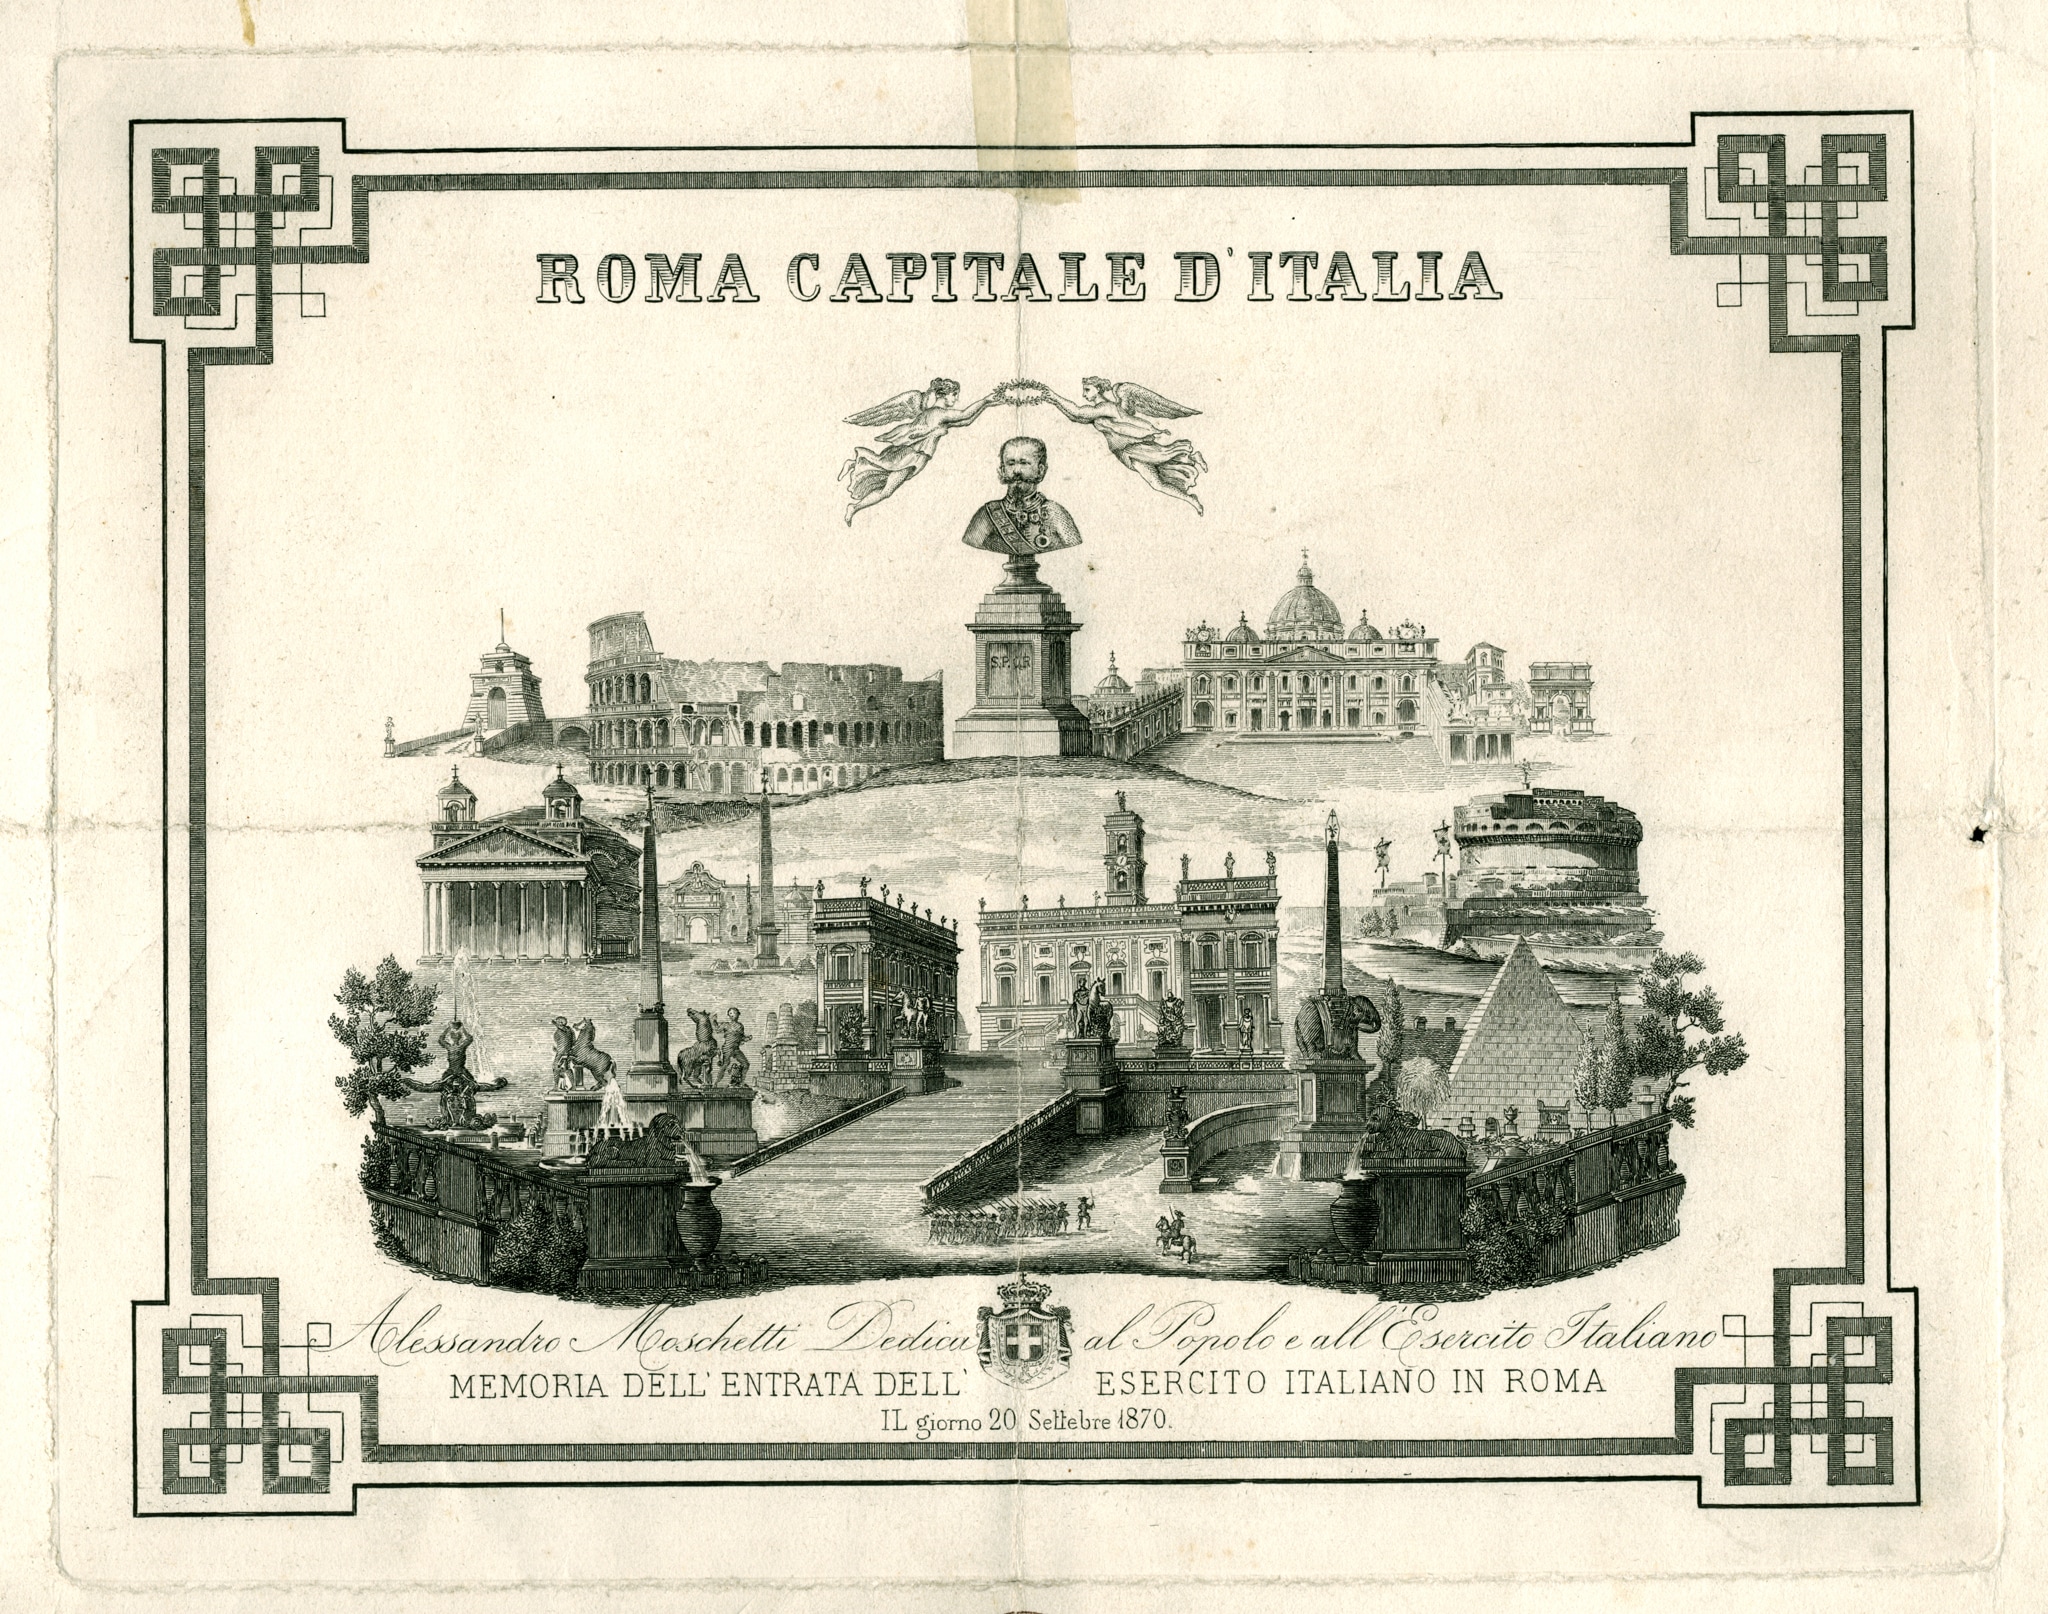 Gloria di Vittorio Emanuele II. Incisione commemorativa del 20 settembre 1870 e di Roma Capitale